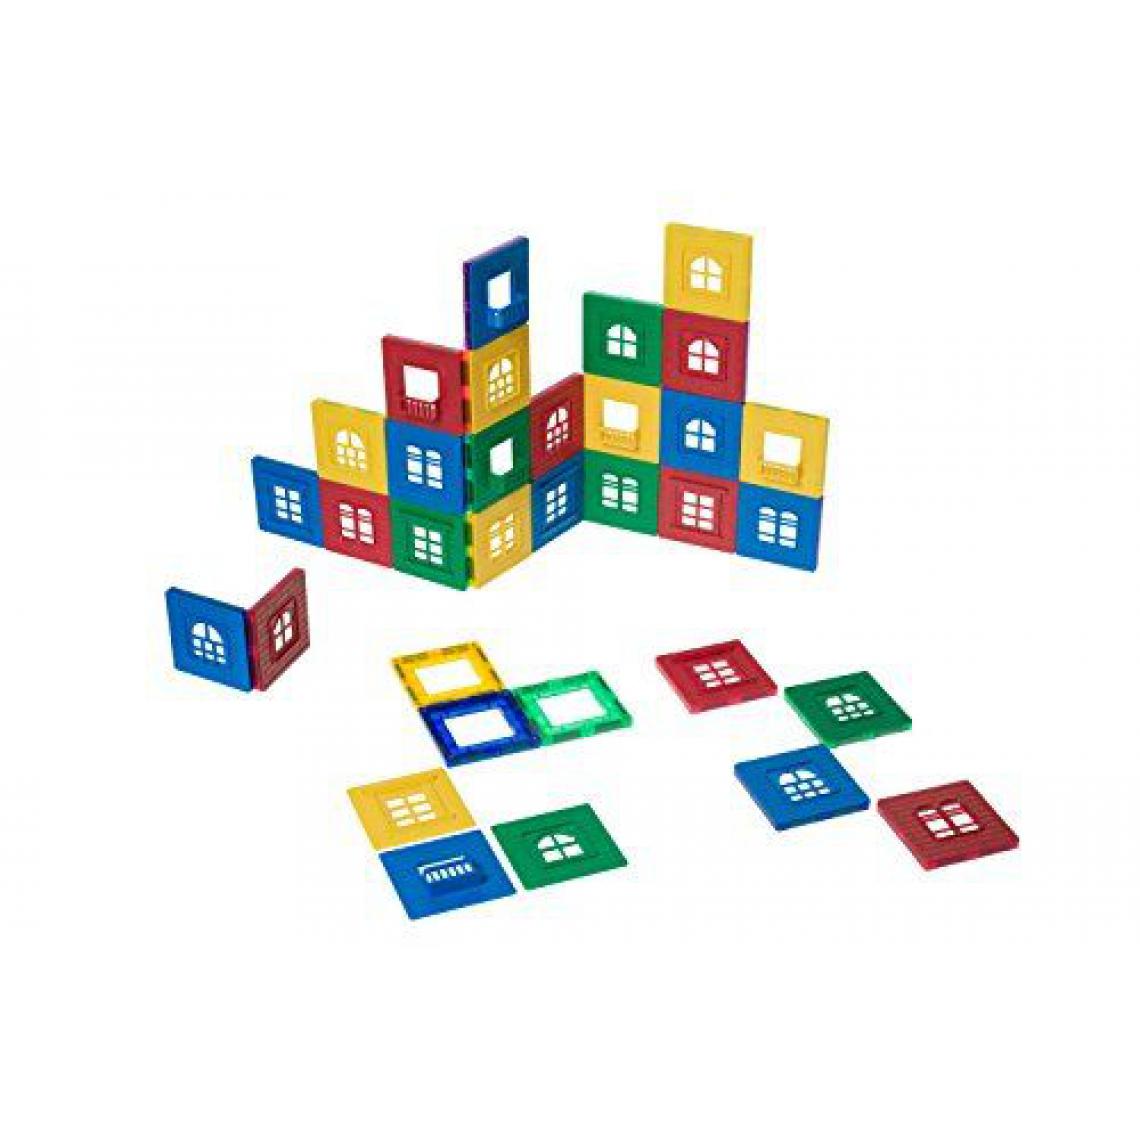 Inconnu - Playmags - 169 - Coffret de Tuiles de Construction Aimantées Playmags - Briques et blocs